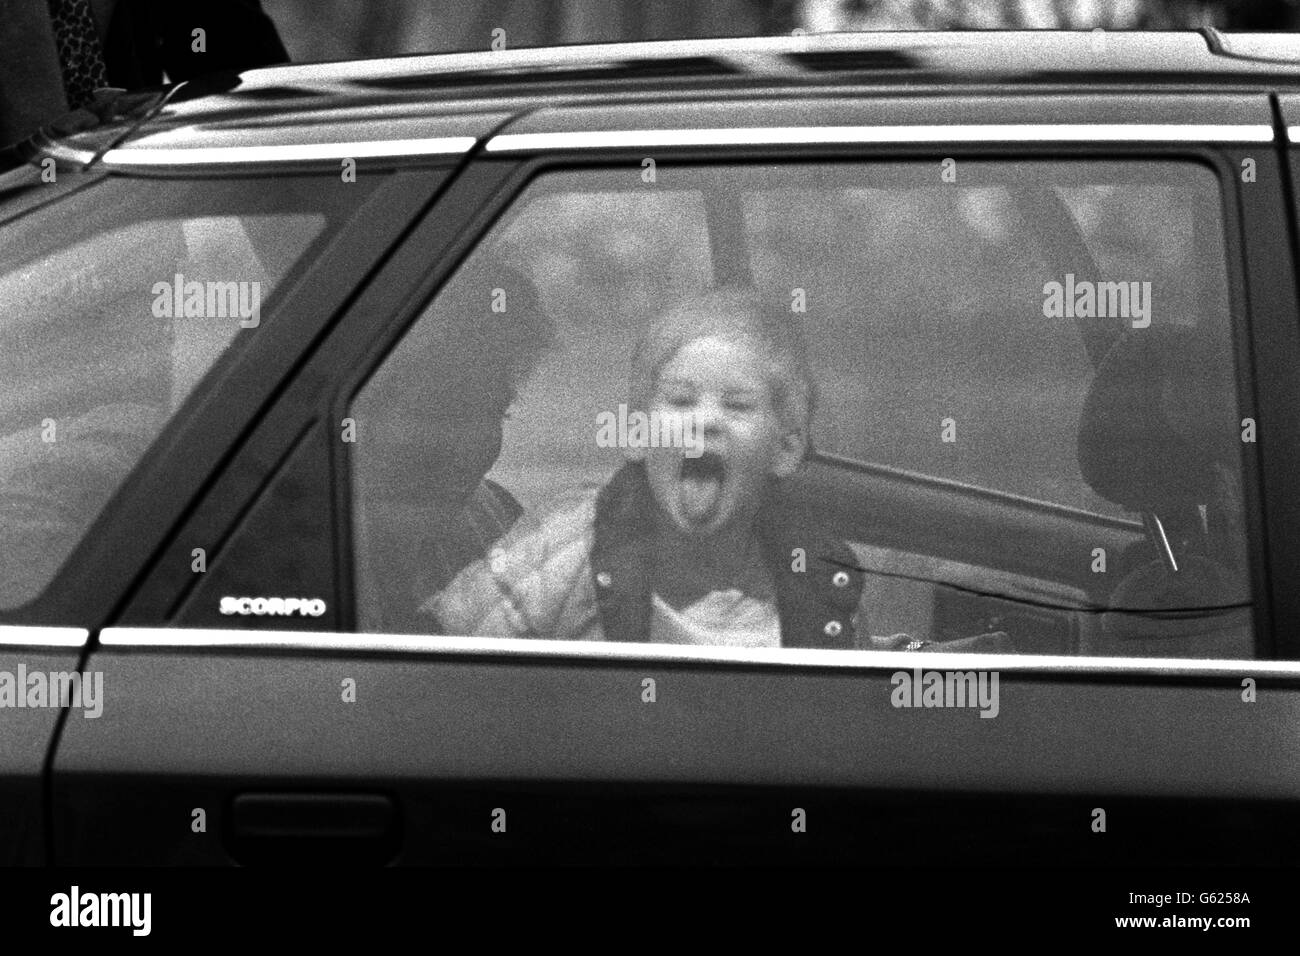 Le Prince Harry arrive à sa maternelle à l'ouest de Londres et accueille les photographes de façon royale. Plus tard, il est apparu dans la pièce de nativité de l'école, qui a été surveillée par ses parents. Banque D'Images